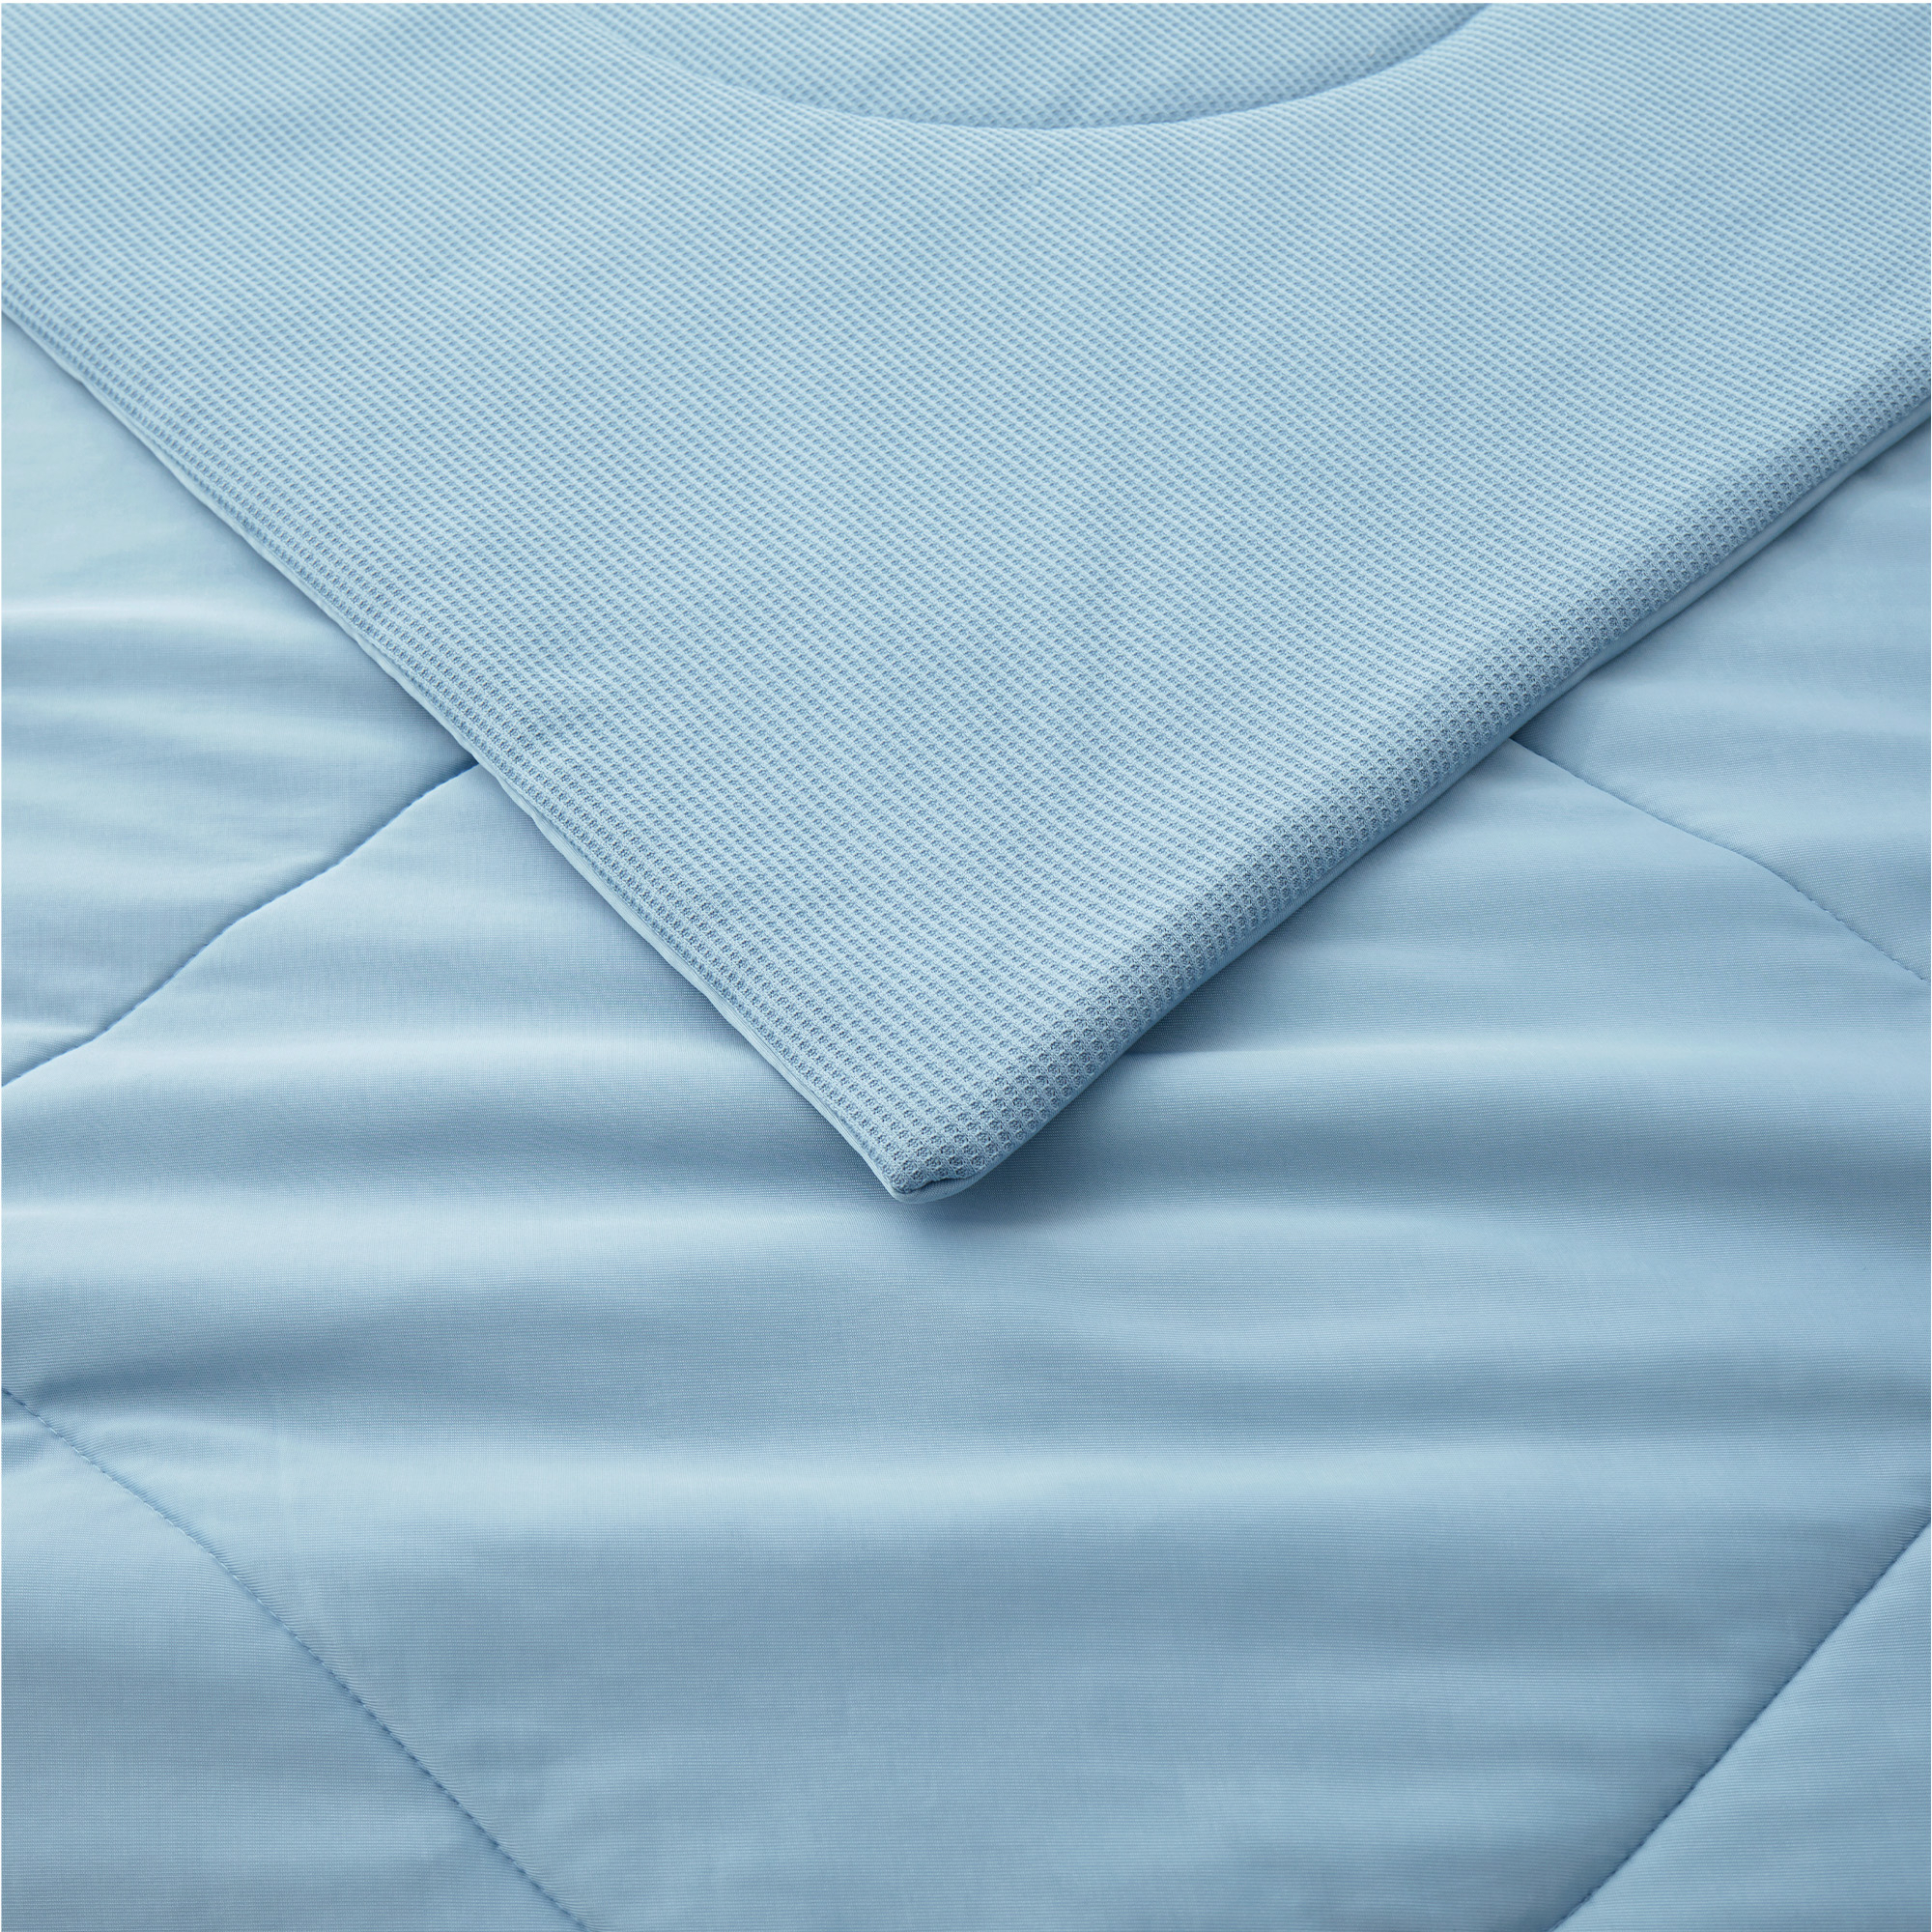 Reversible Oversize Blanket Queen Lightweight Blankets For Hot Sleepers, Blue, 90 X 90